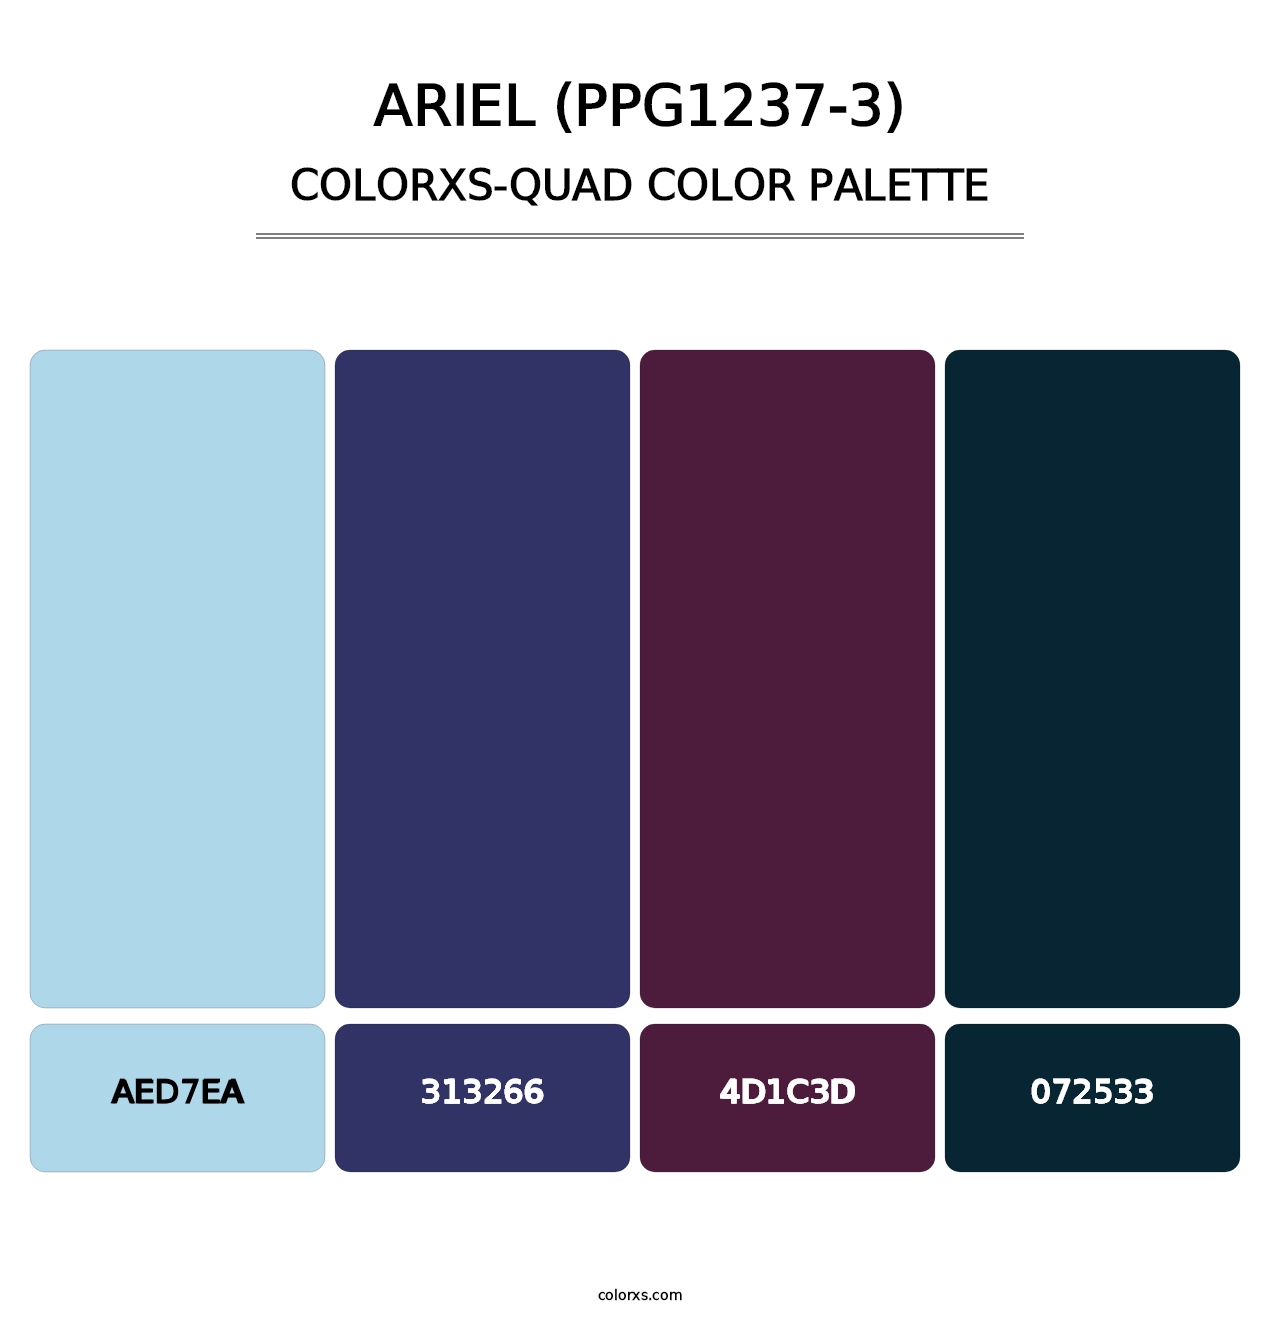 Ariel (PPG1237-3) - Colorxs Quad Palette